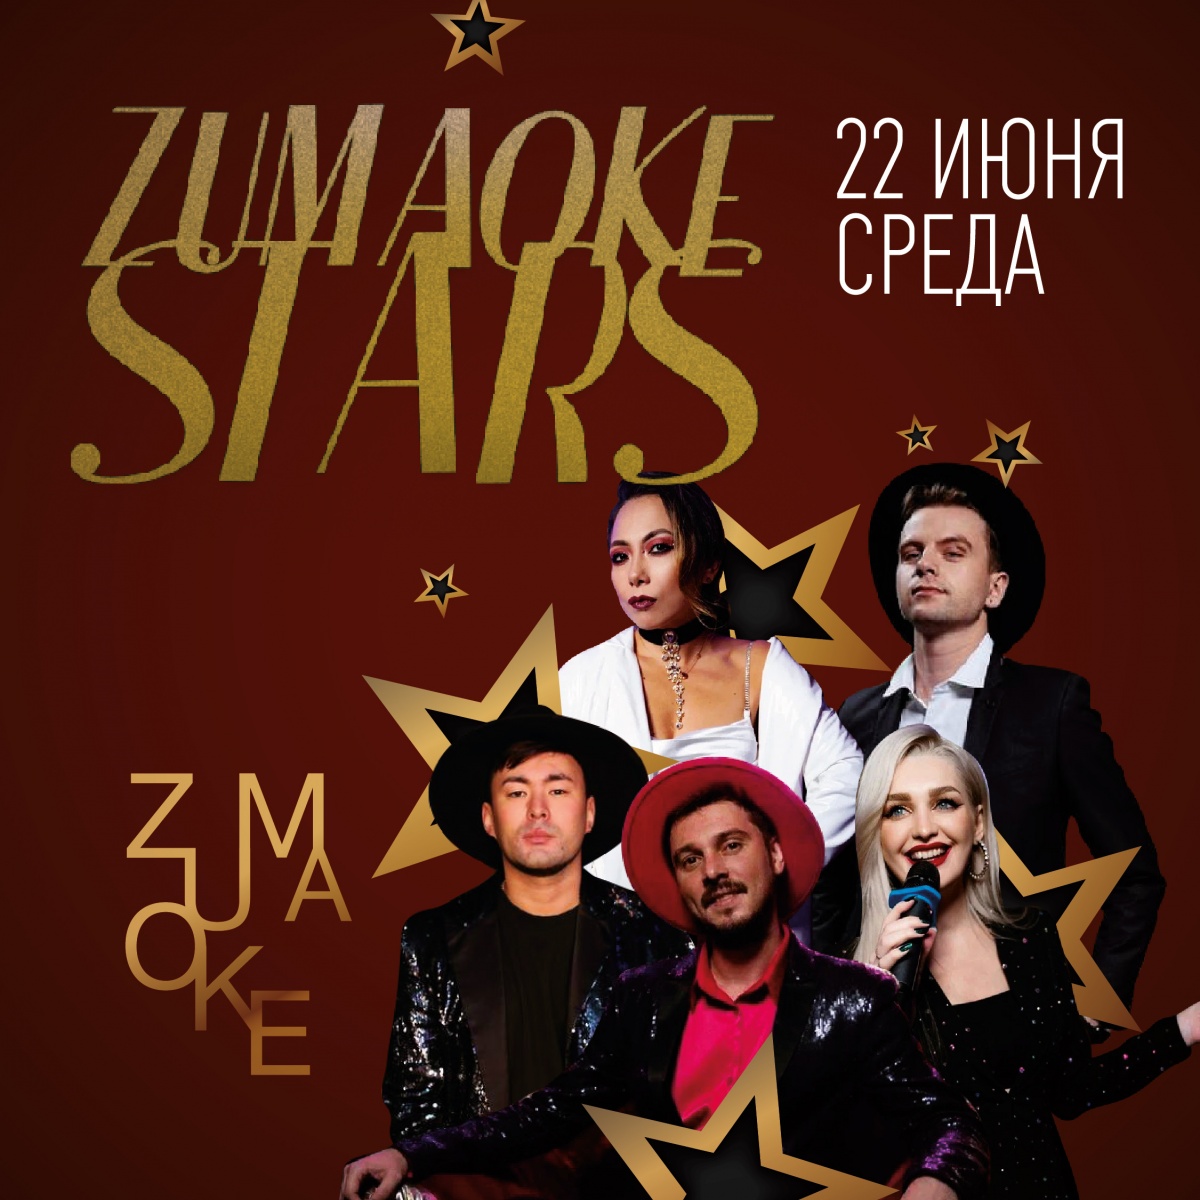  ZUMAOKE STARS 22.06